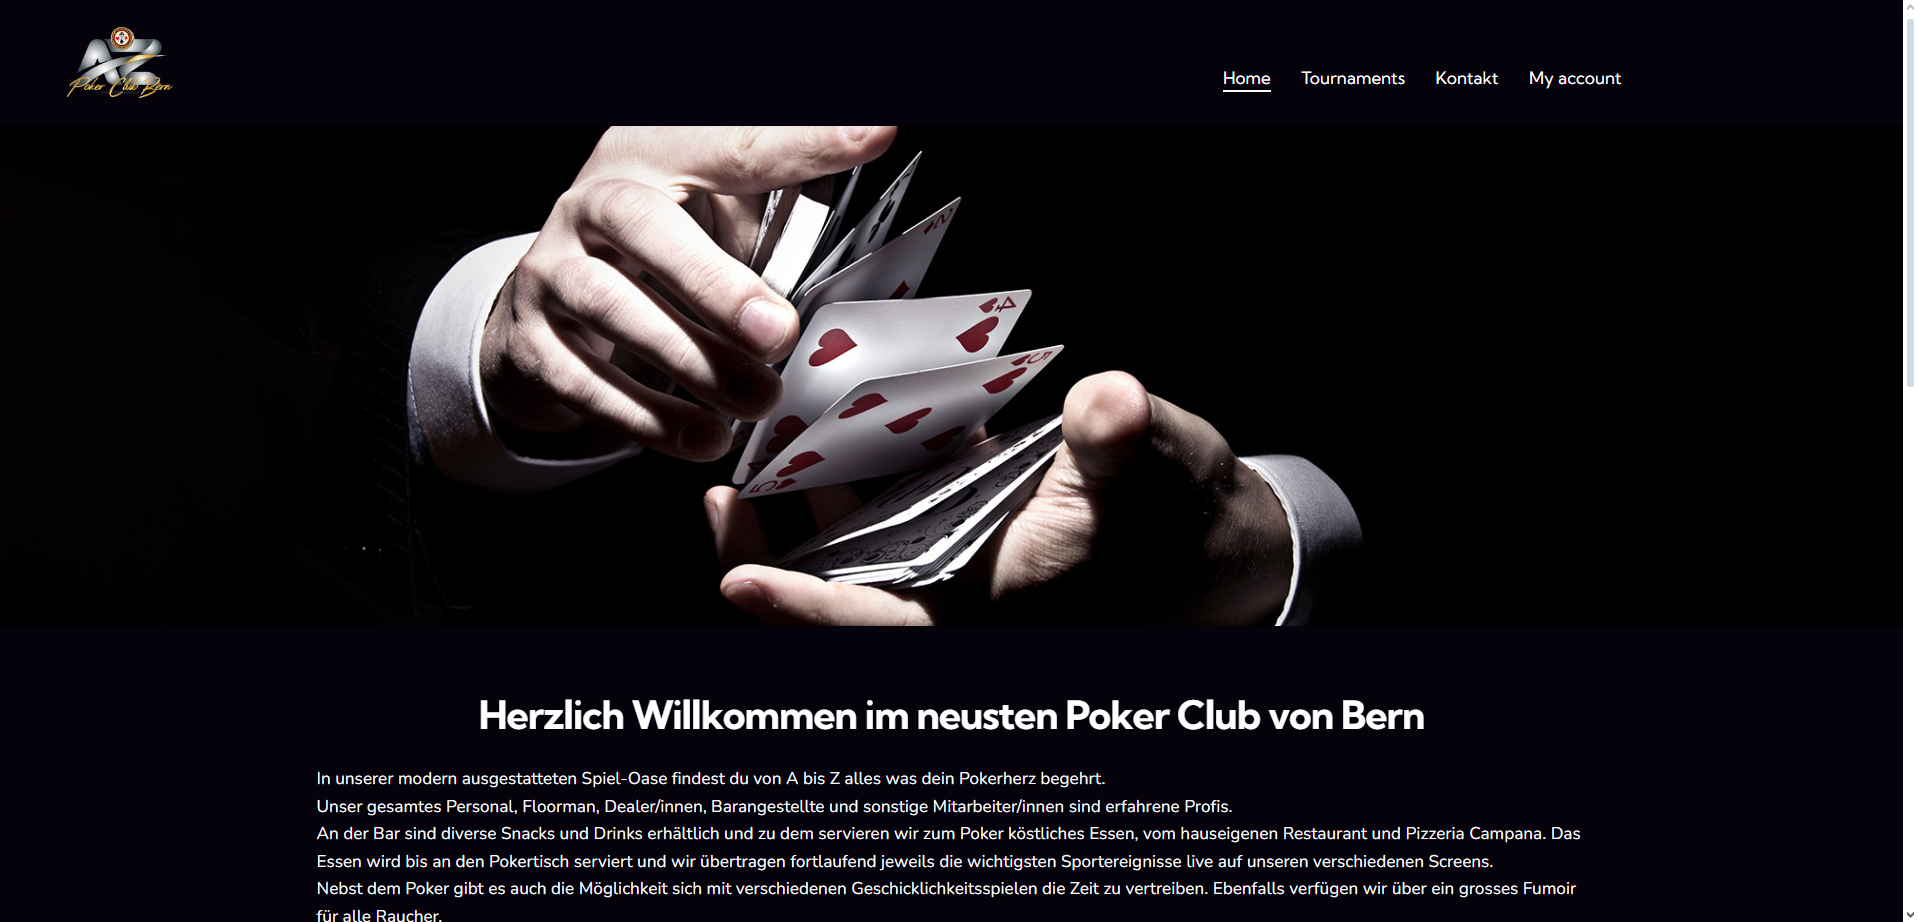 Tournaments » AZ Poker Club Bern